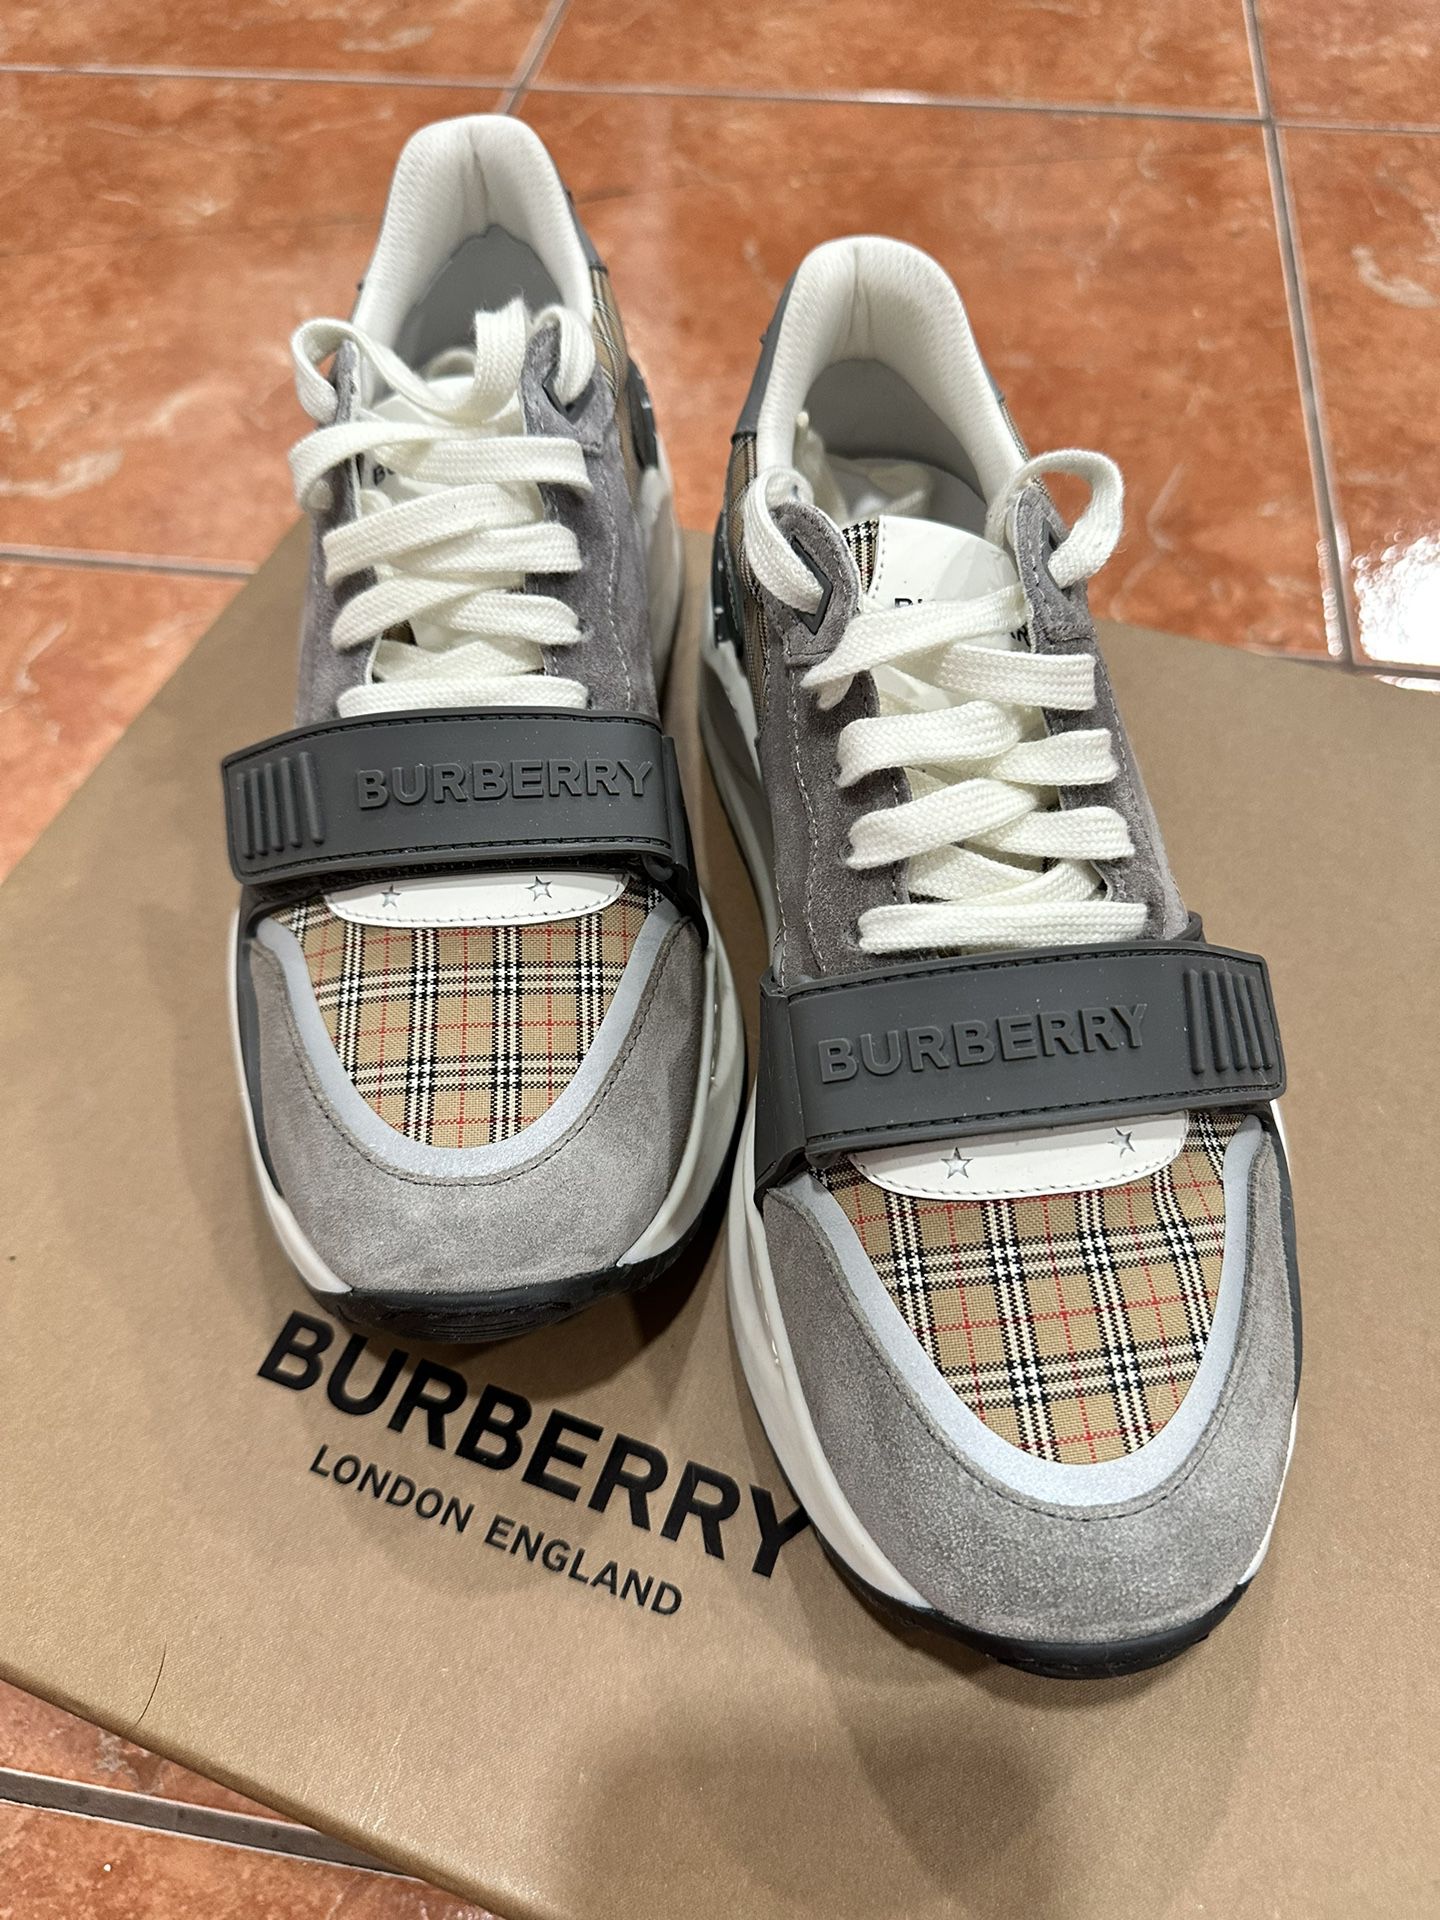 Burberry Men’s Shoes Authentic Size 7